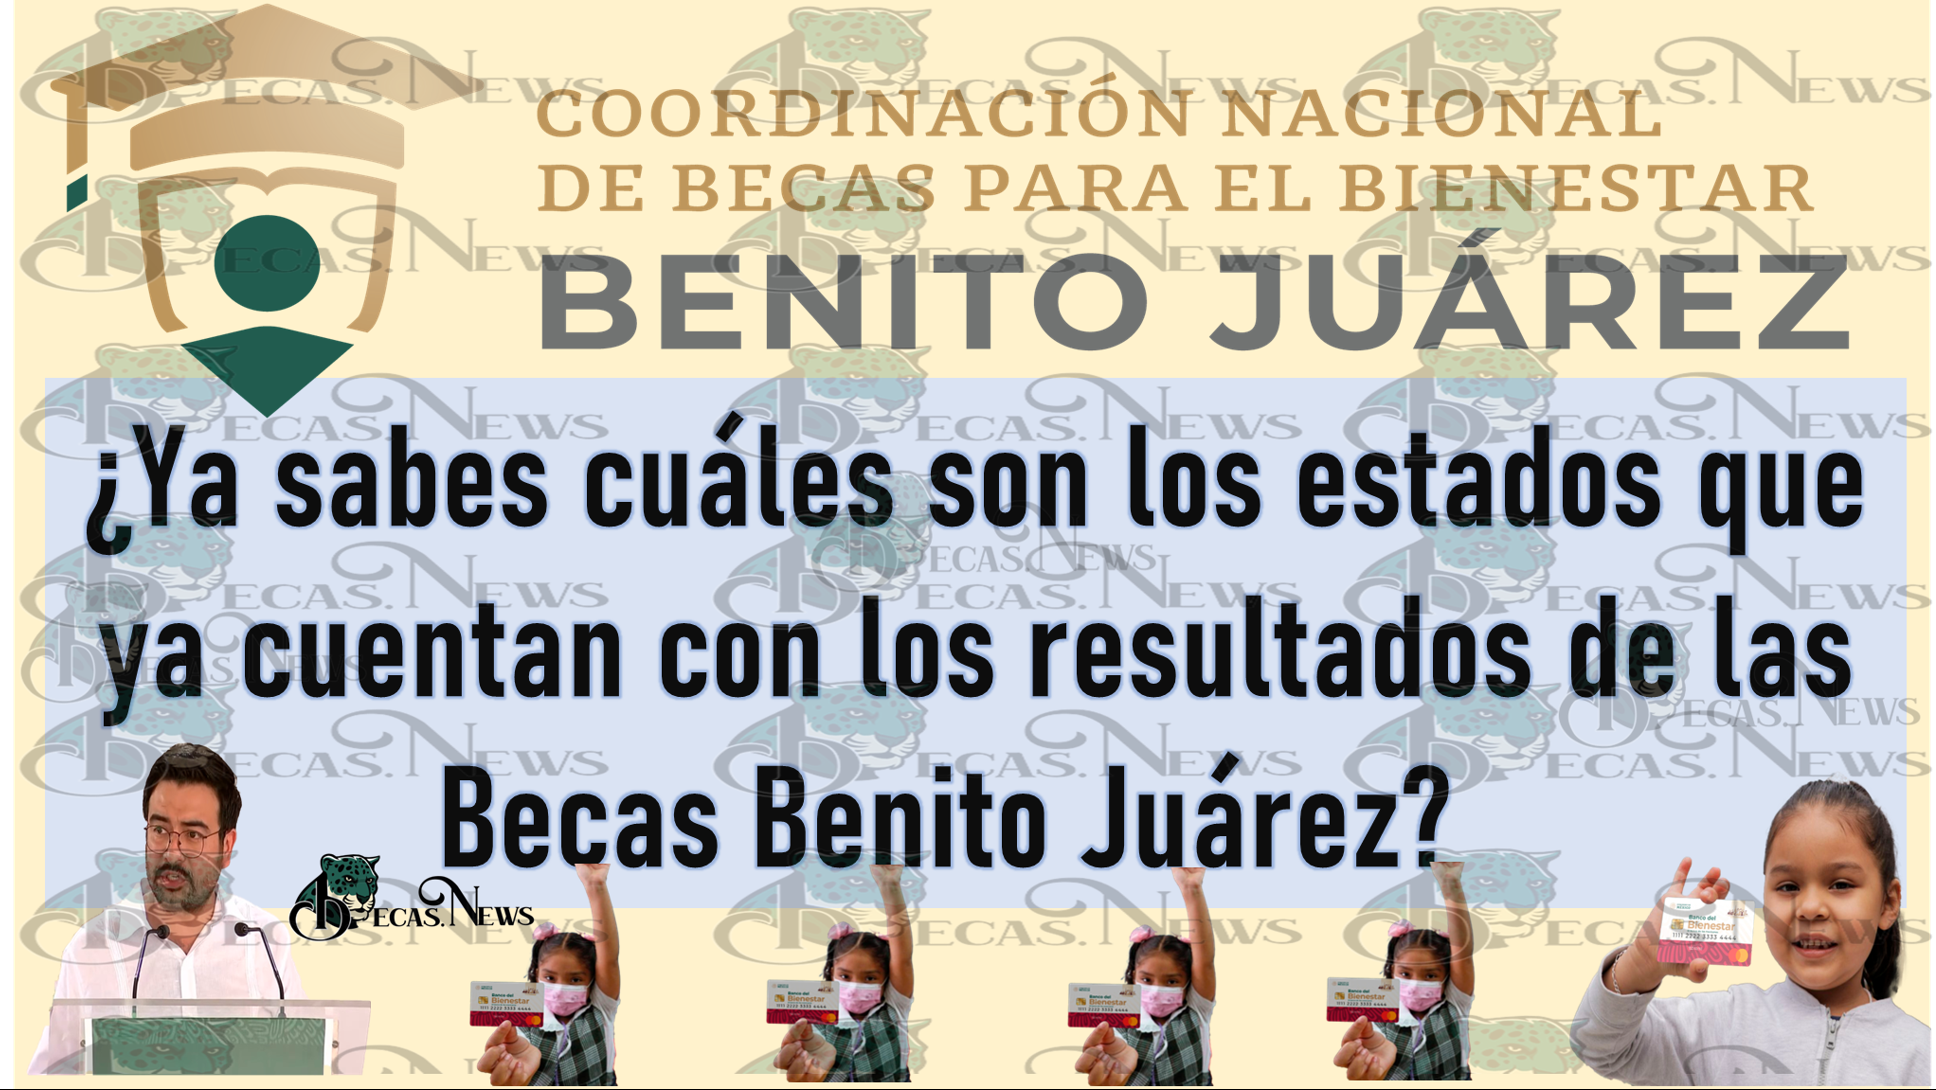 ¿Ya sabes cuáles son los estados que ya cuentan con los resultados de las Becas Benito Juárez?